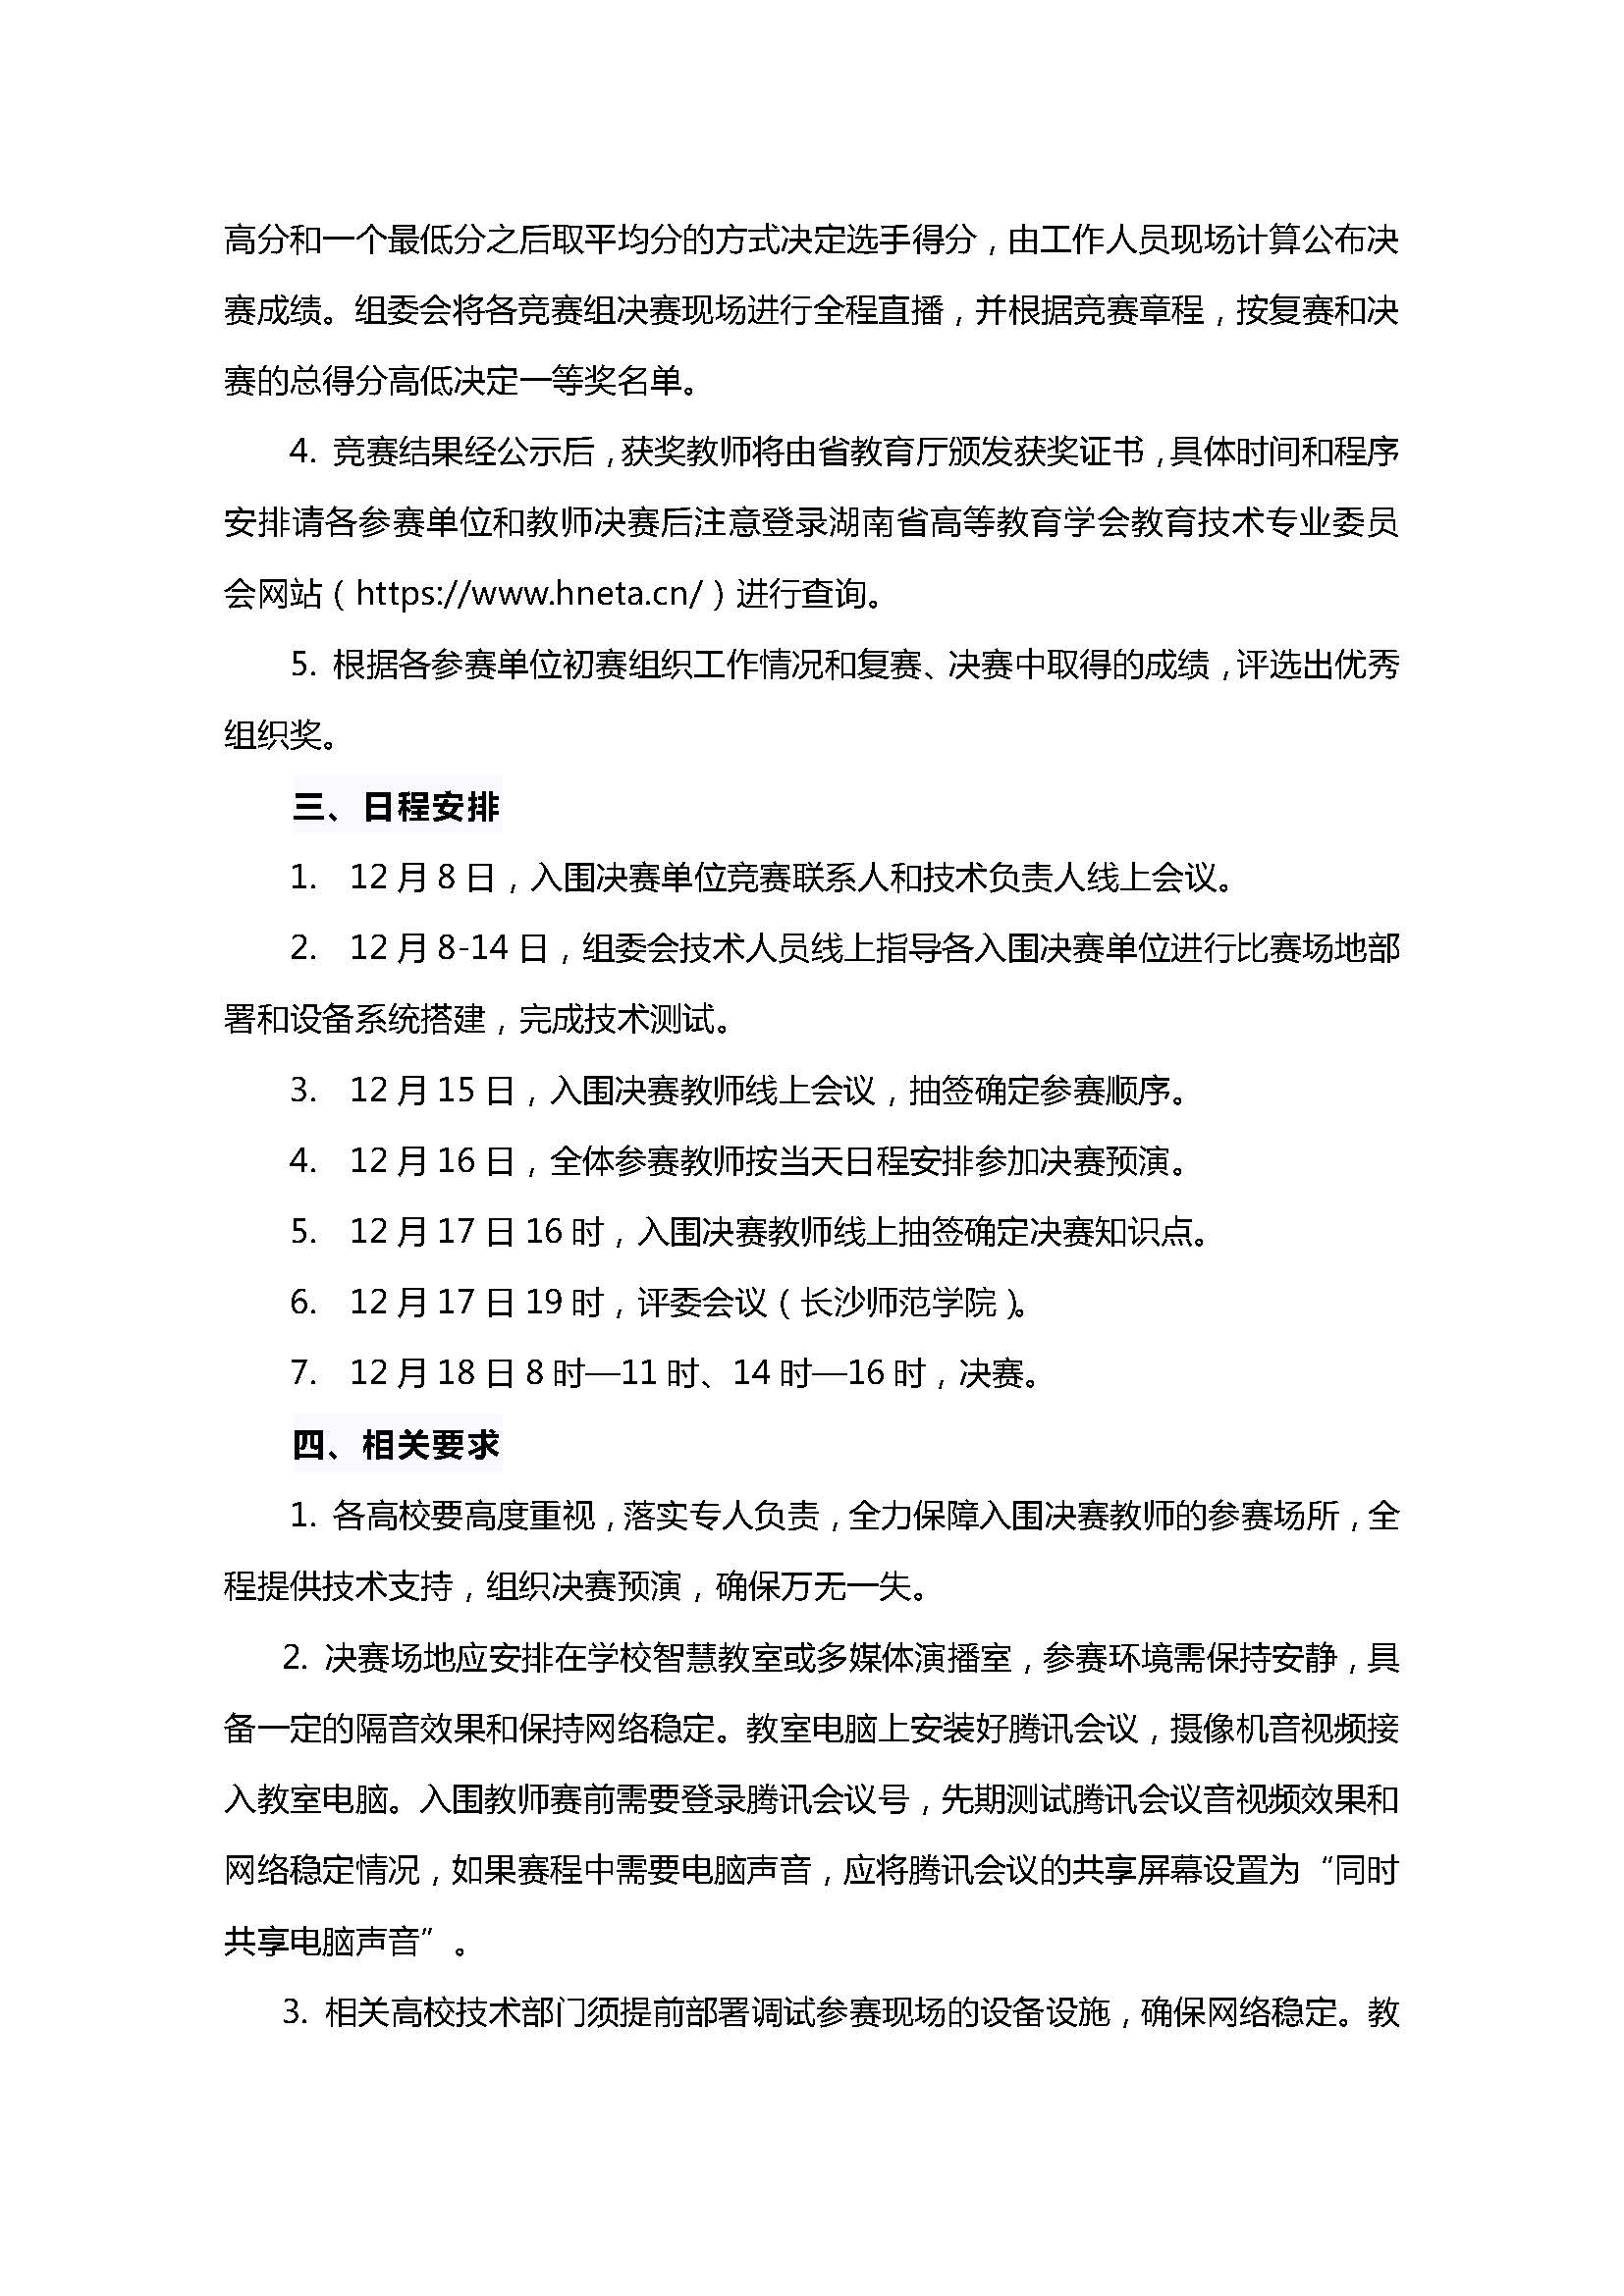 湖南省普通高校教师信息化教学竞赛决赛通知_页面_2.jpg